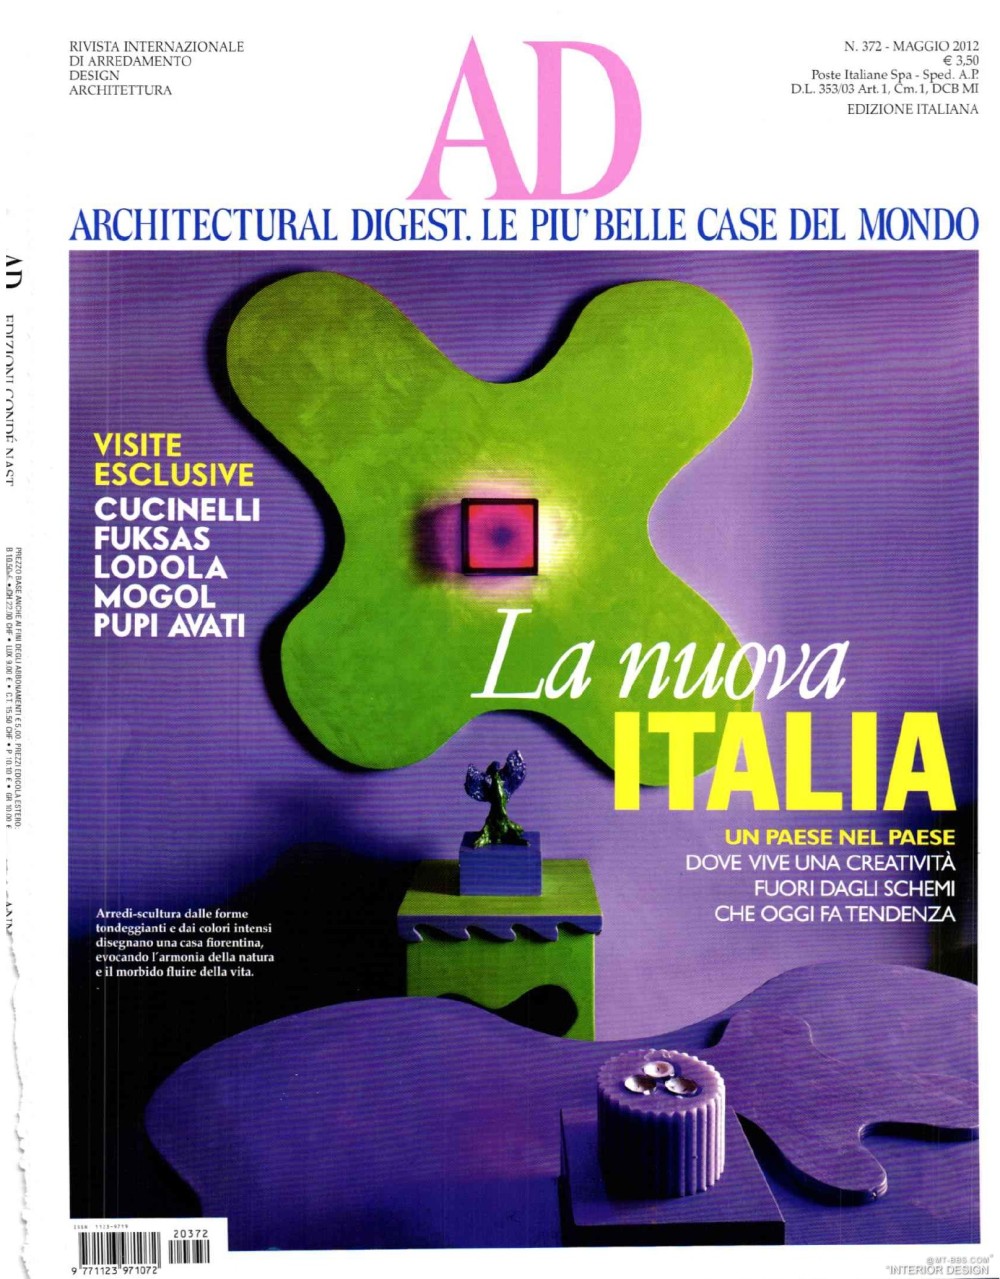 意大利AD 杂志 2012年全年JPG高清版本 全免（上传完毕）_0001.jpg